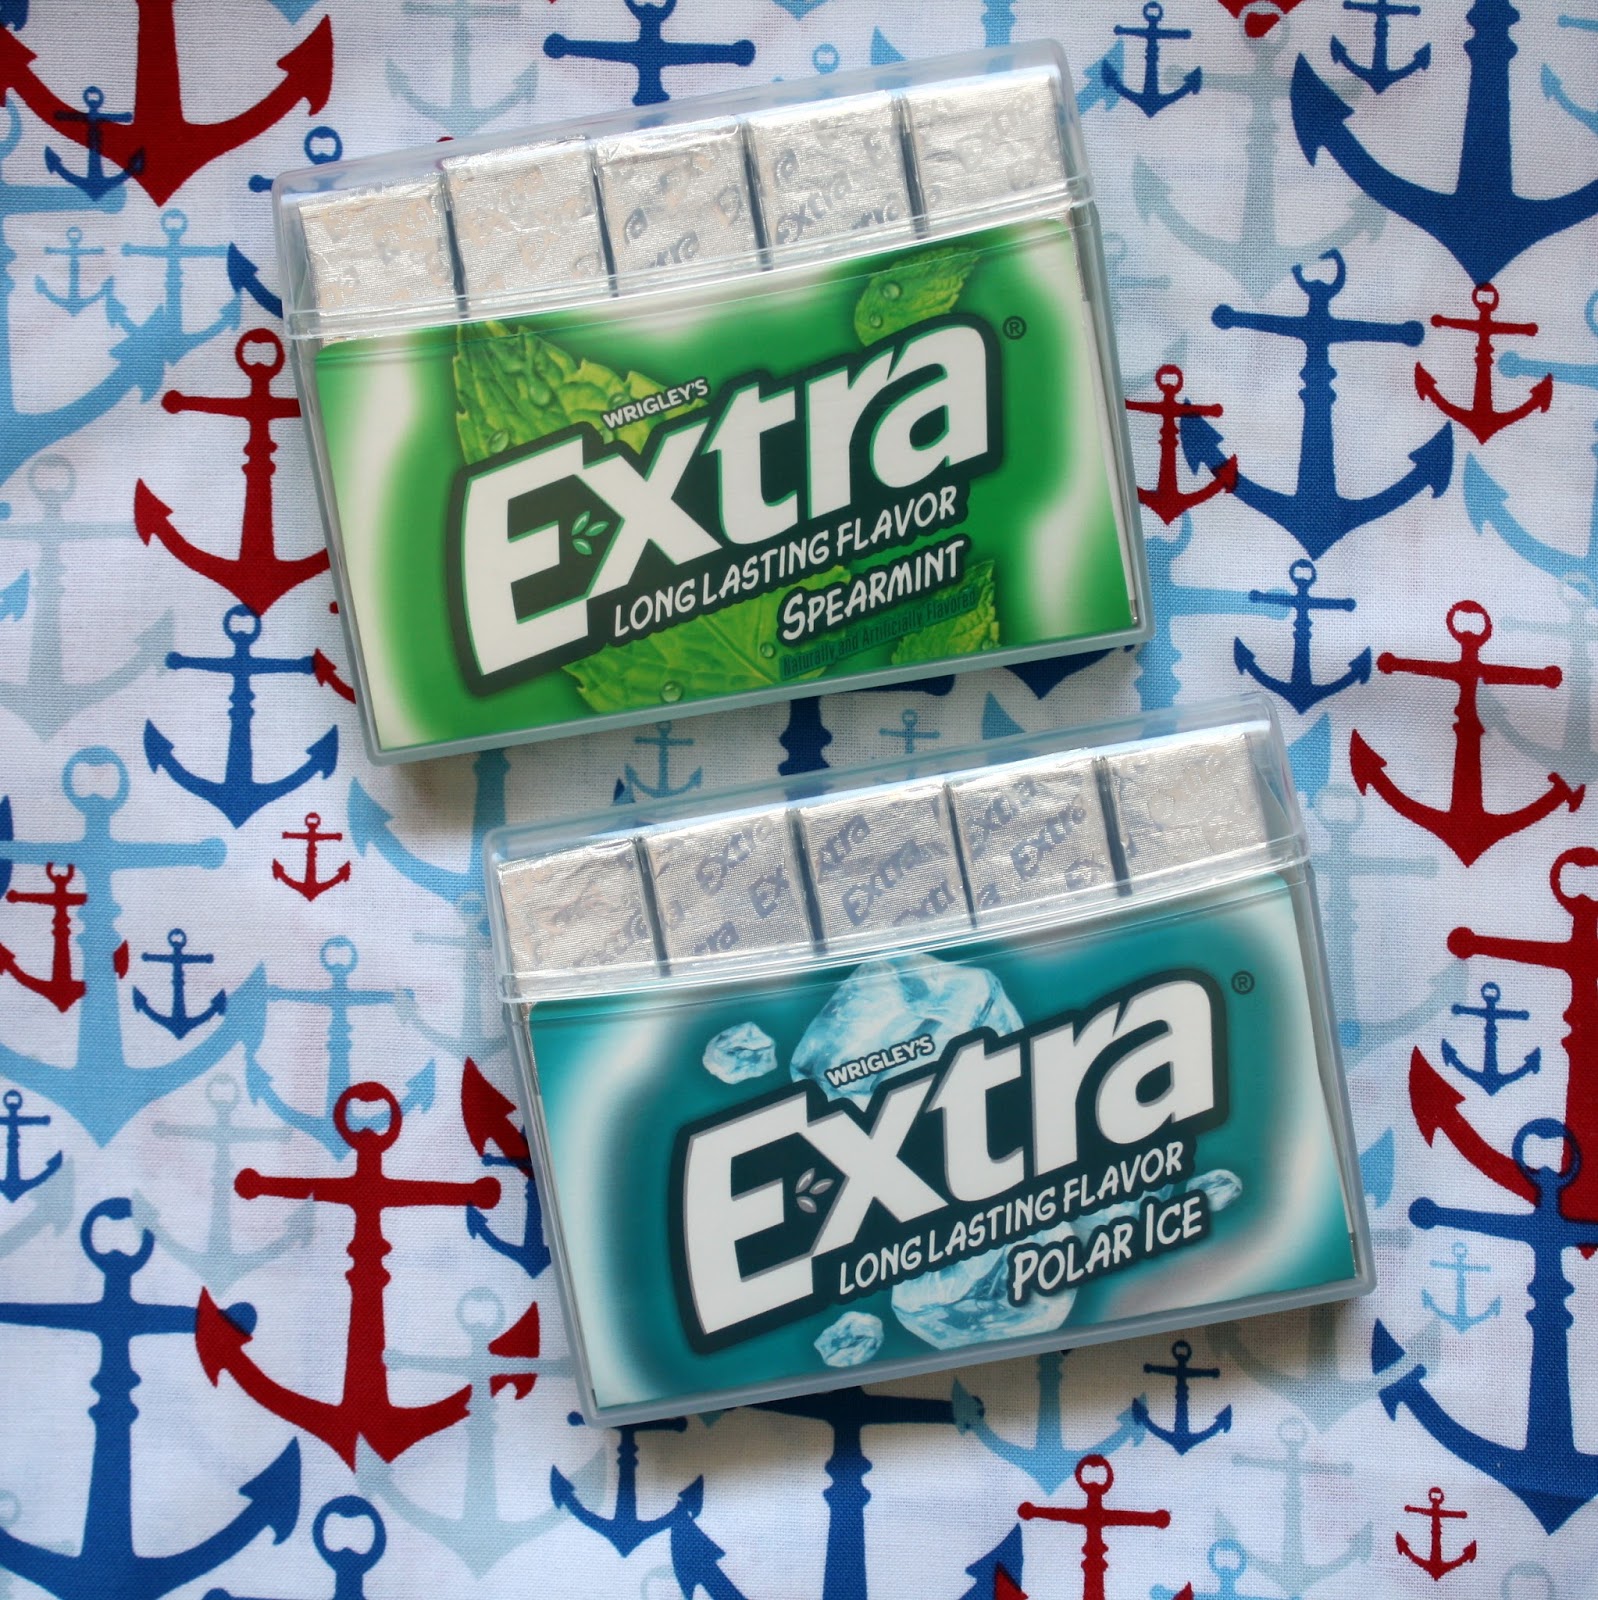 Wrigley's extra gum